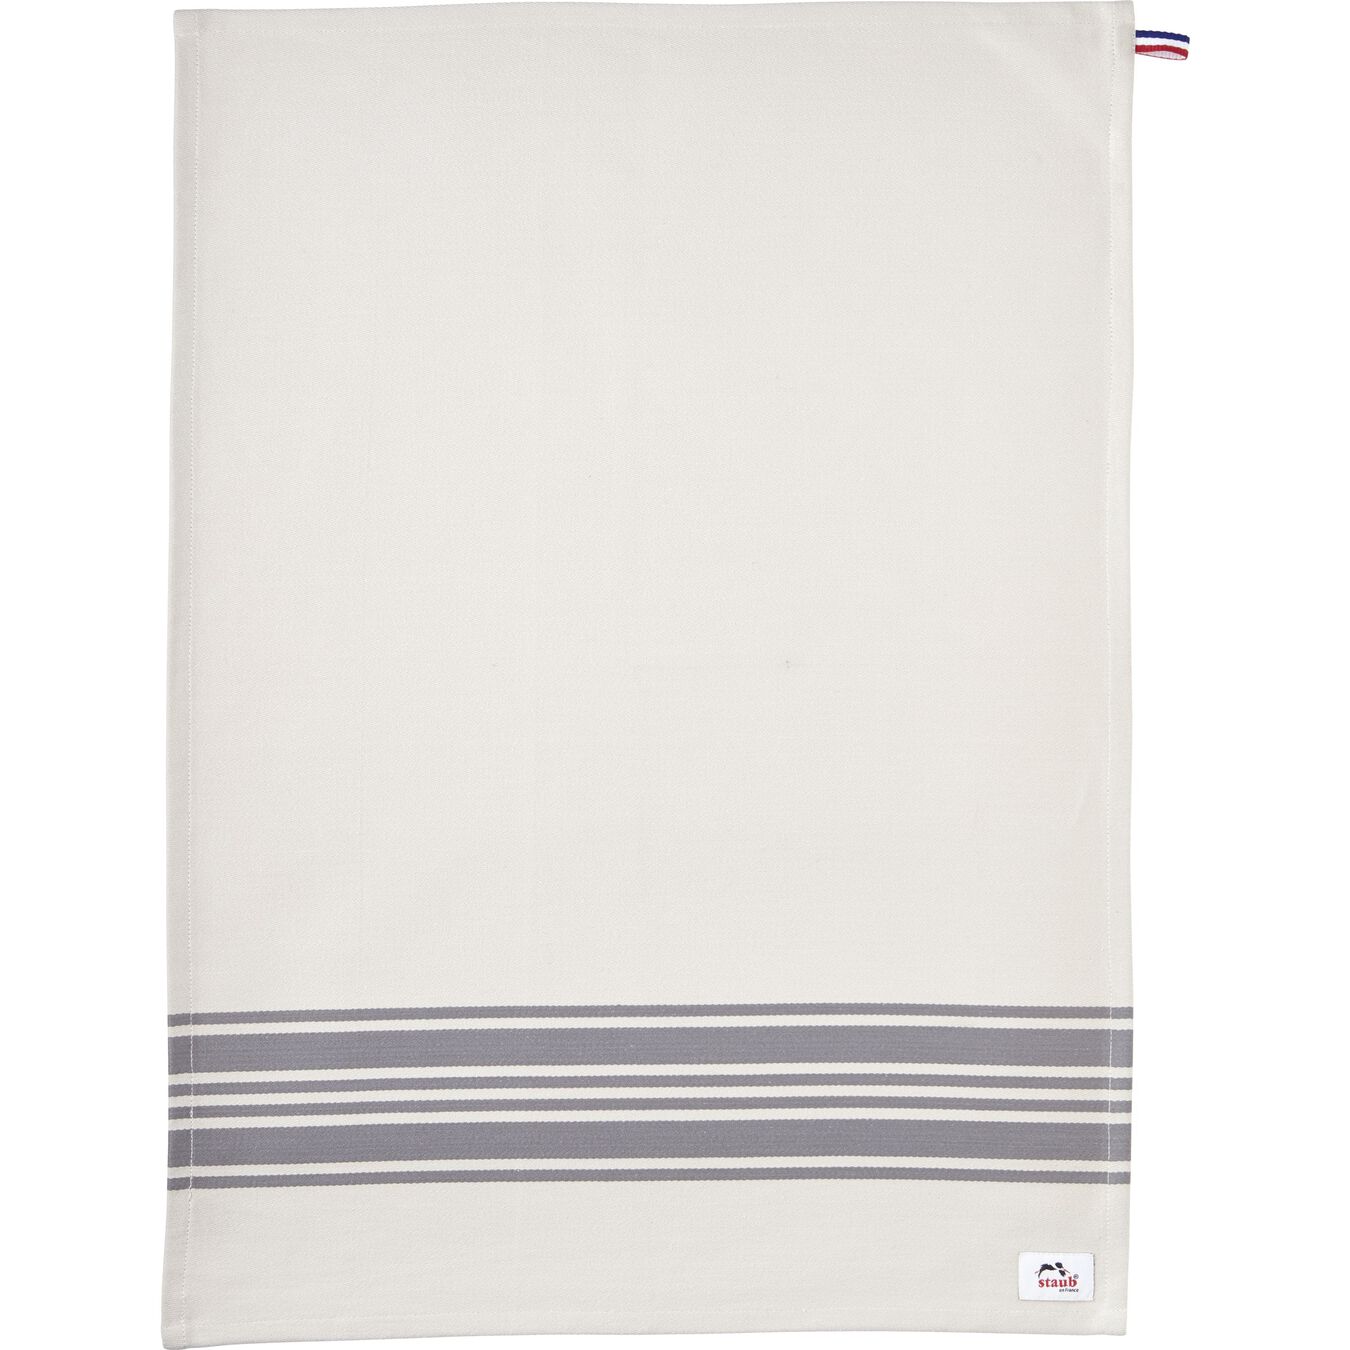 70 cm x 50 cm Kitchen towel, grey,,large 6